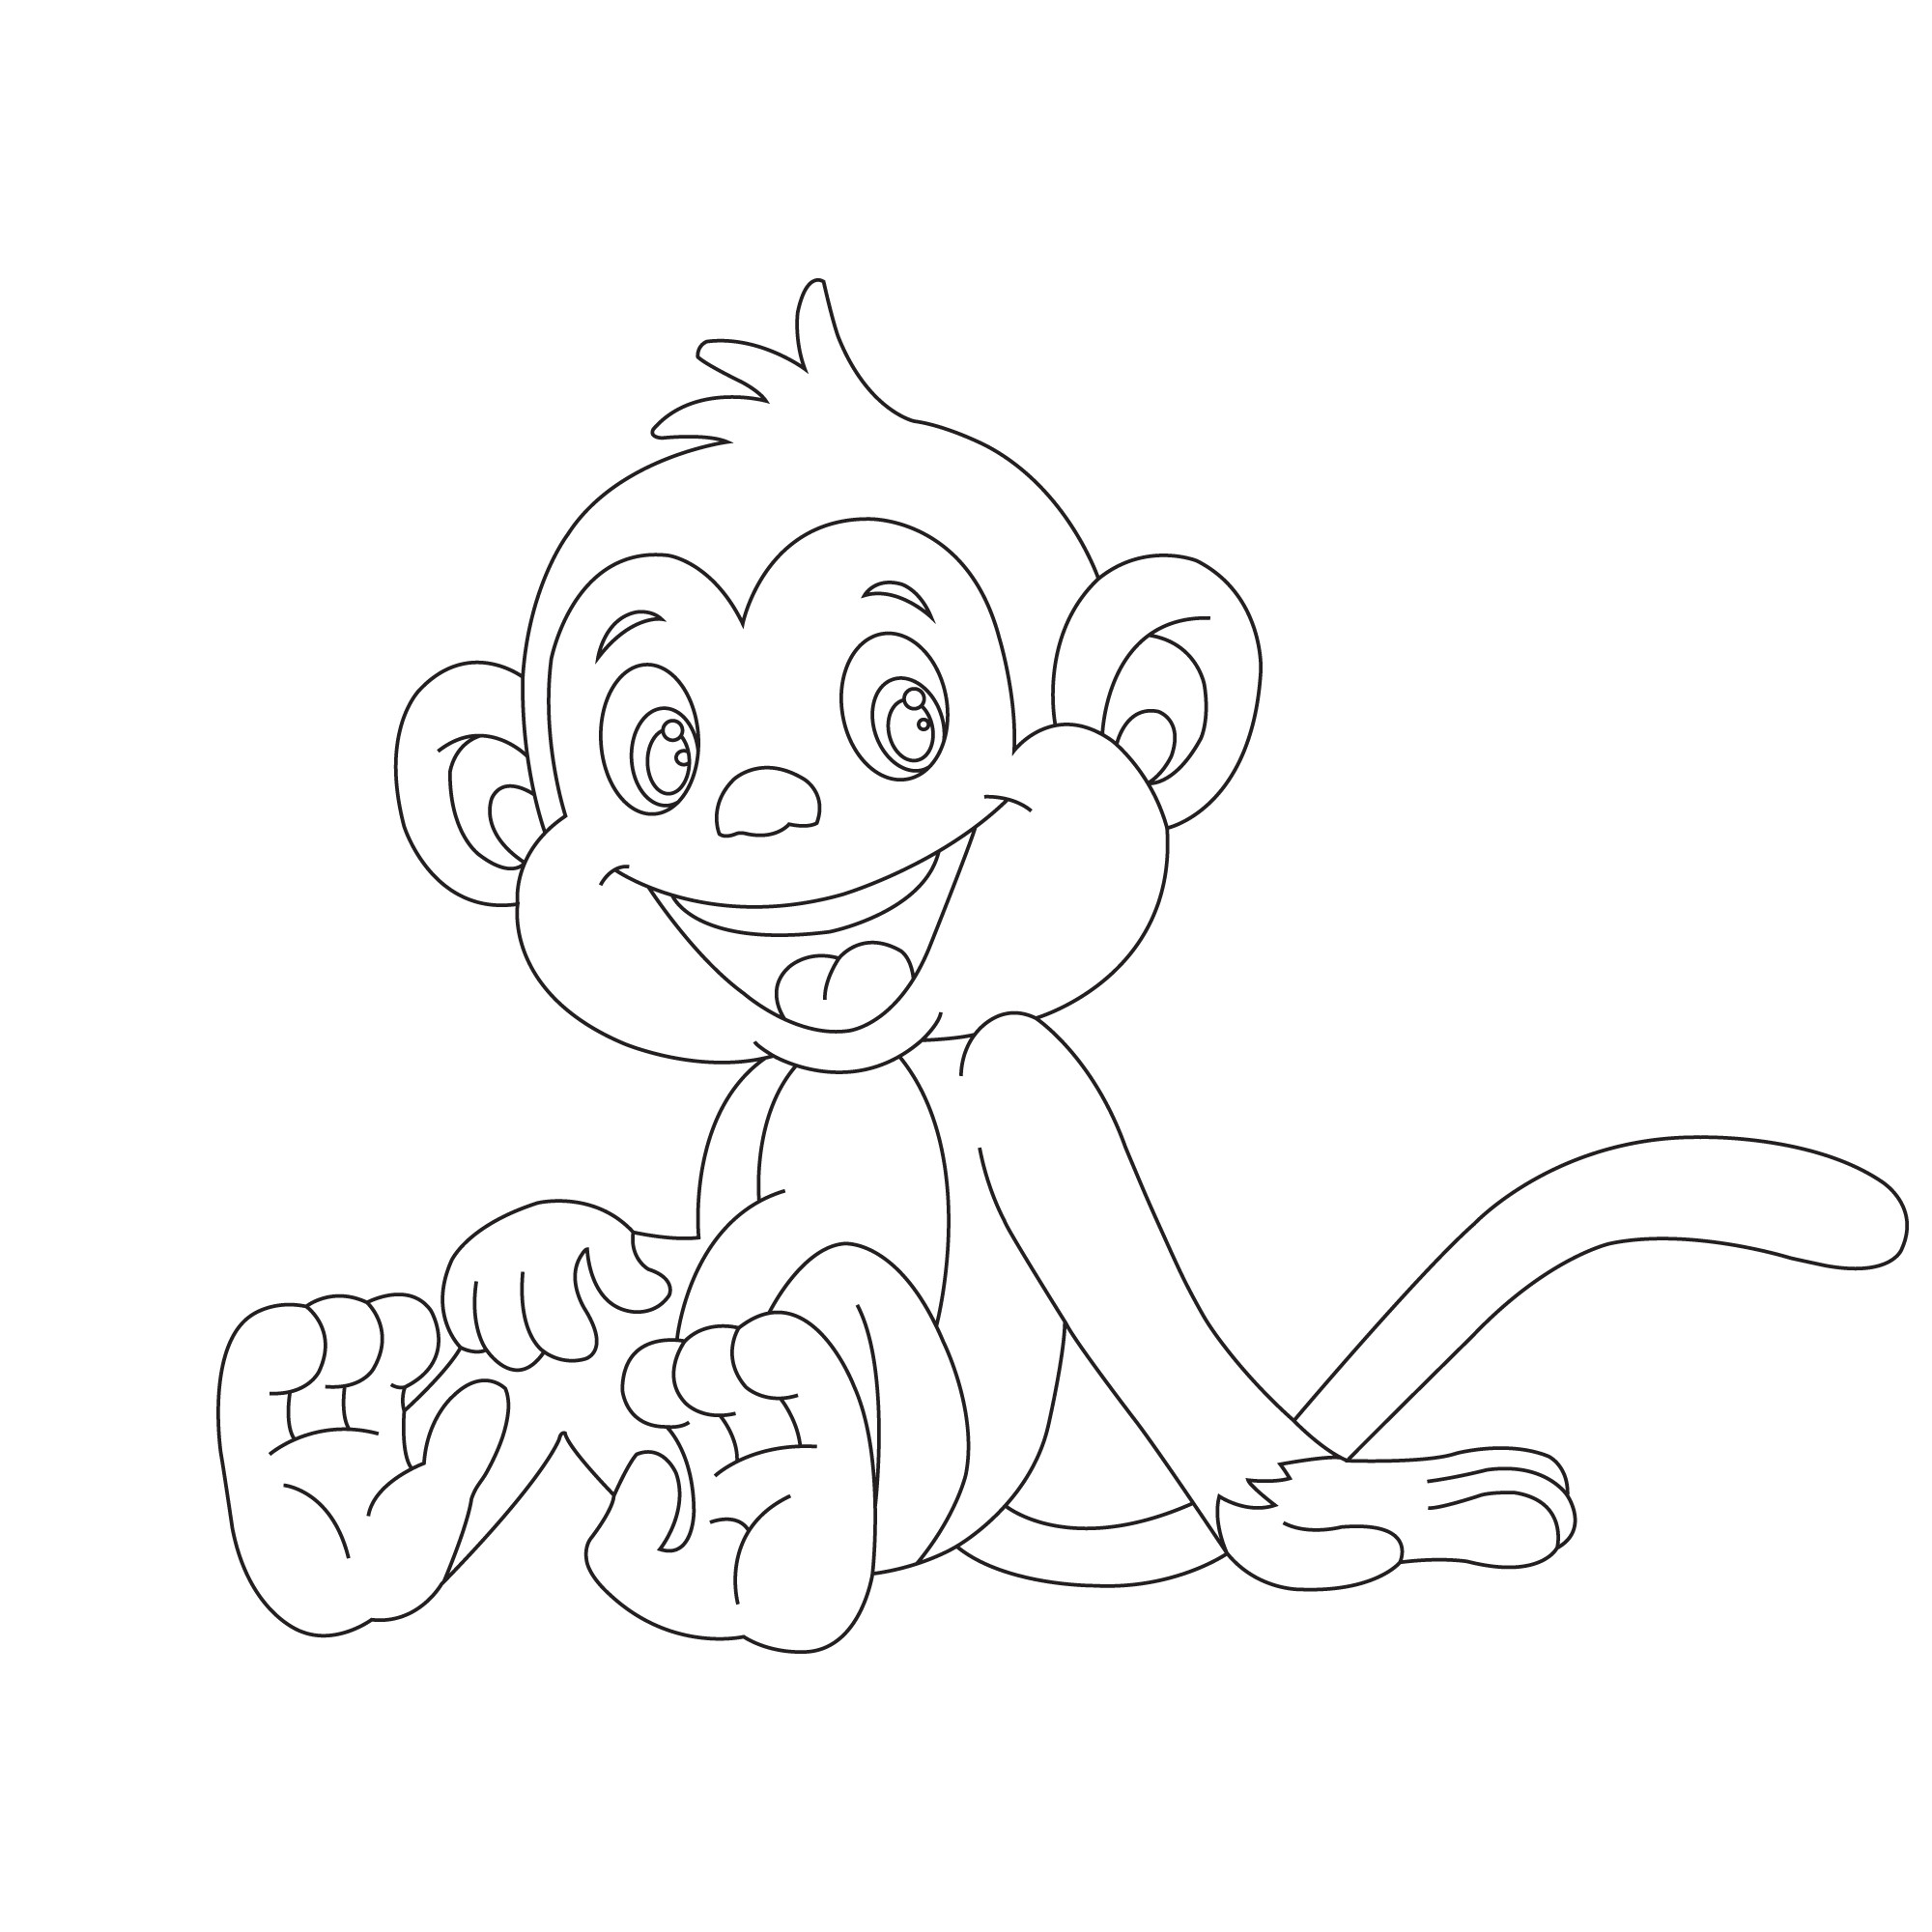 Раскраска для детей: маленькая обезьянка сидит и смеется